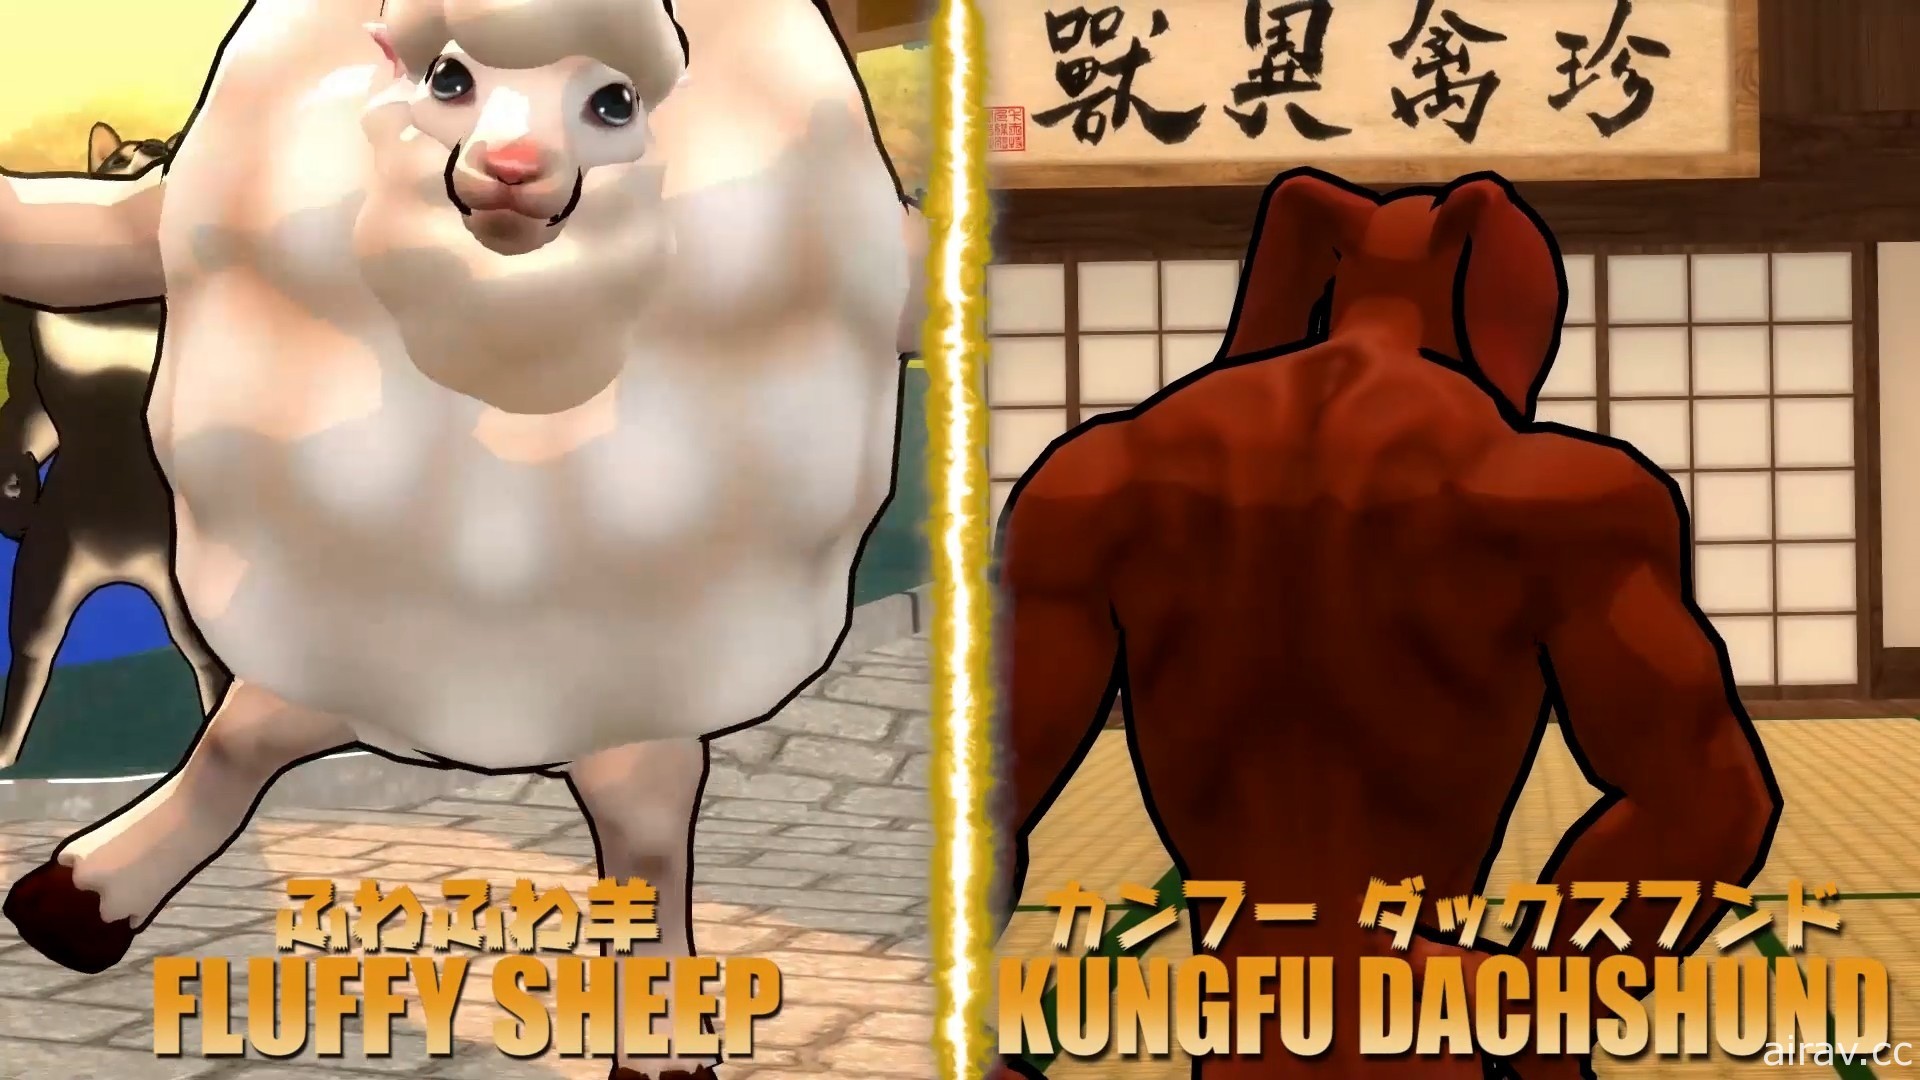 《动物之鬪》PC 版释出免费更新 新角色“功夫腊肠”“咩噗羊”登场